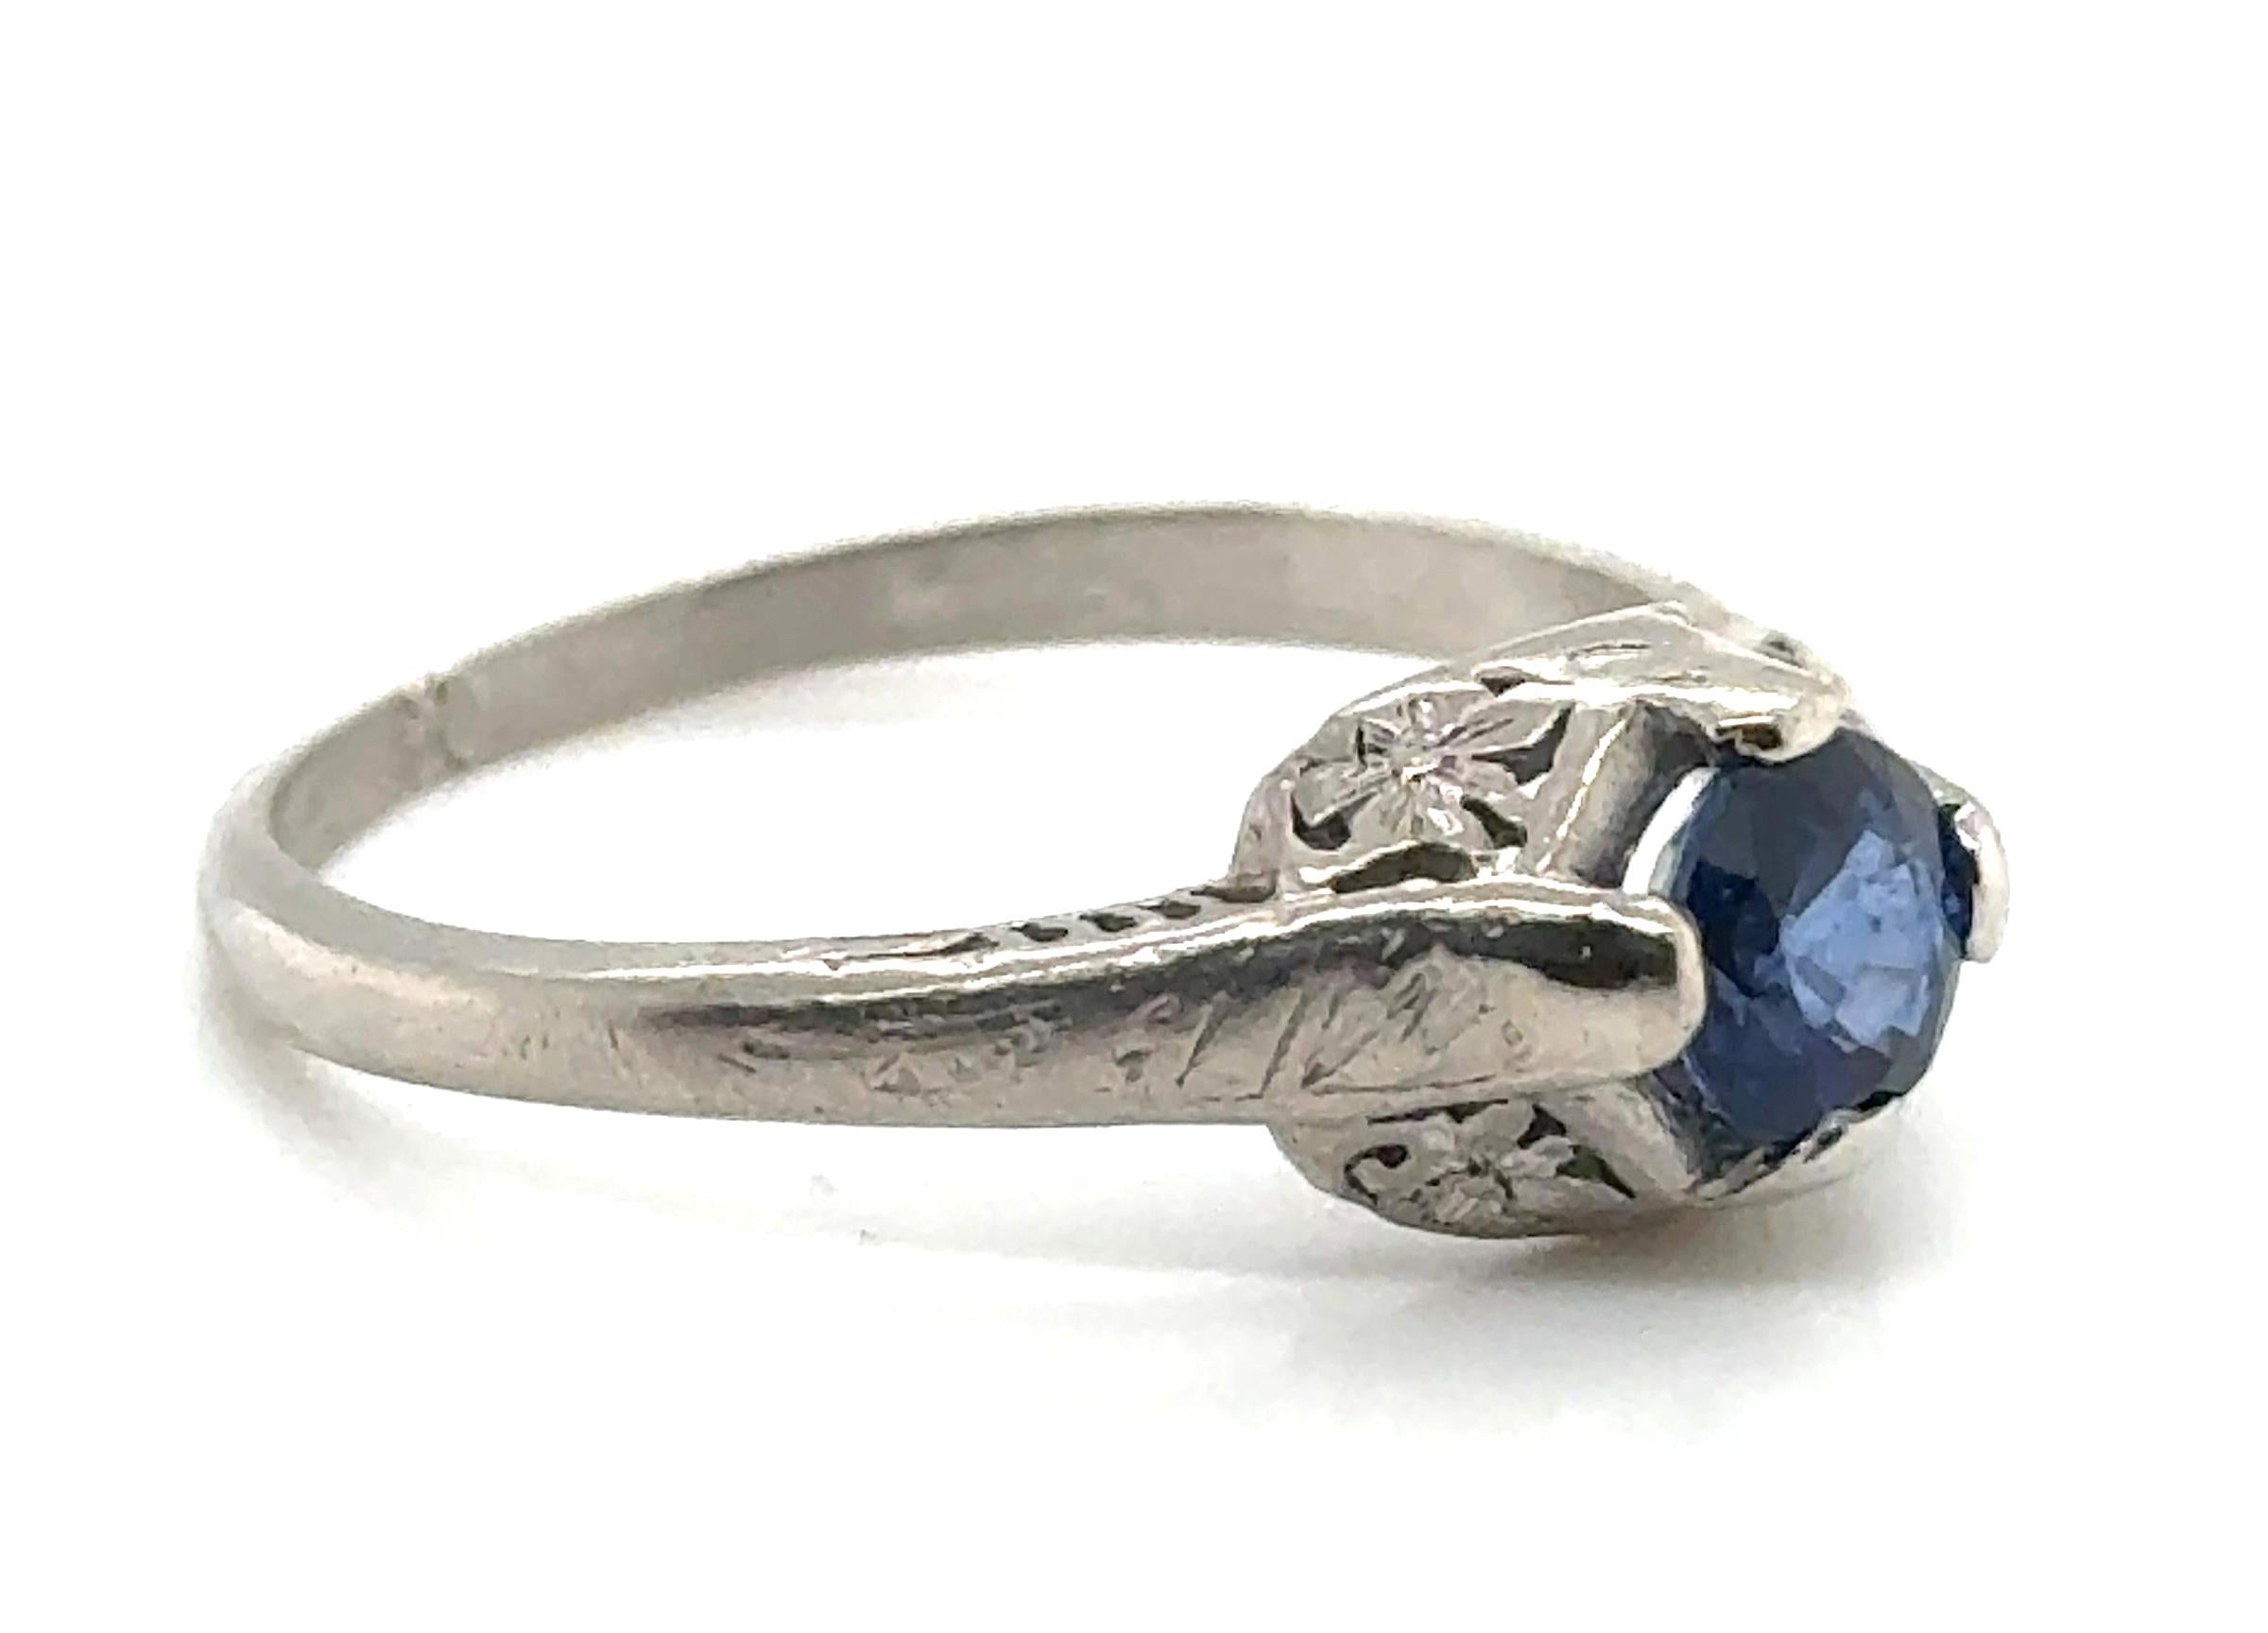 Echte Original-Antike aus den 1920er Jahren Saphir Ring .70ct Solitär Platin Art Deco


Mit einem herrlichen .70ctGenuine Natural Round Blue Sapphire Center

Kunstvolle Gravur mit kühnem königsblauem Edelstein  

Handgravur 